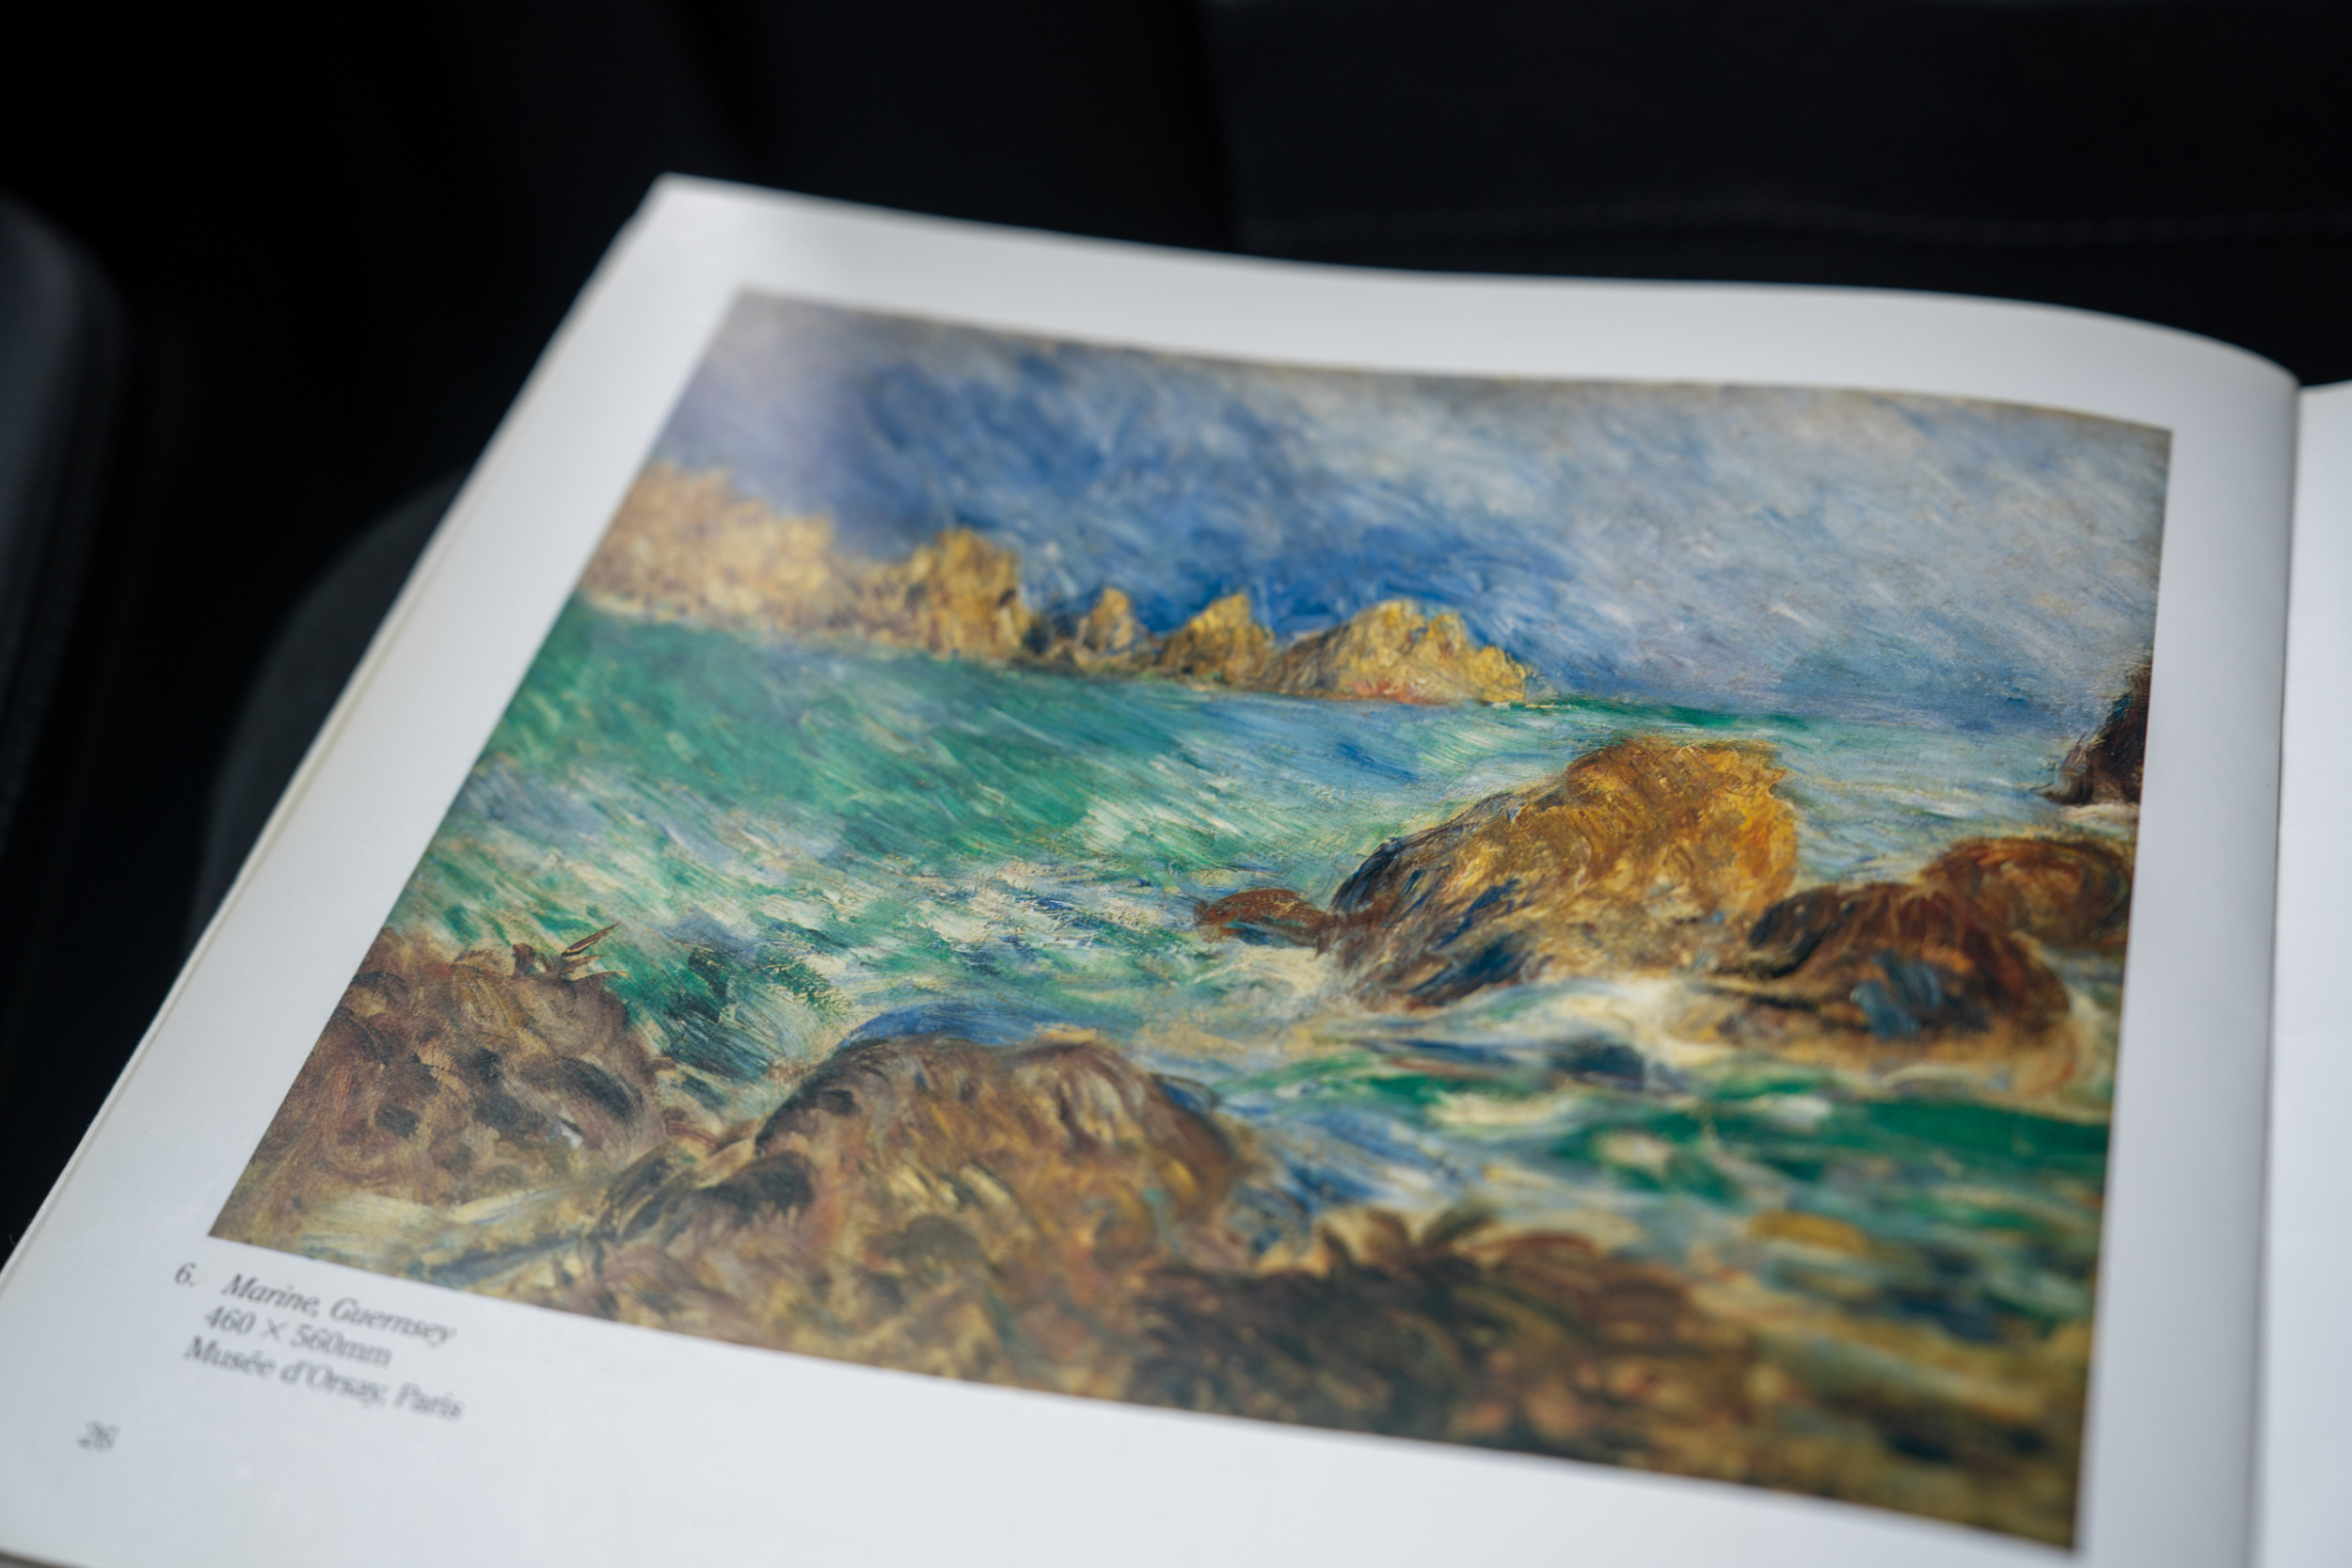 Renoir fand auf der Insel seine Inspiration